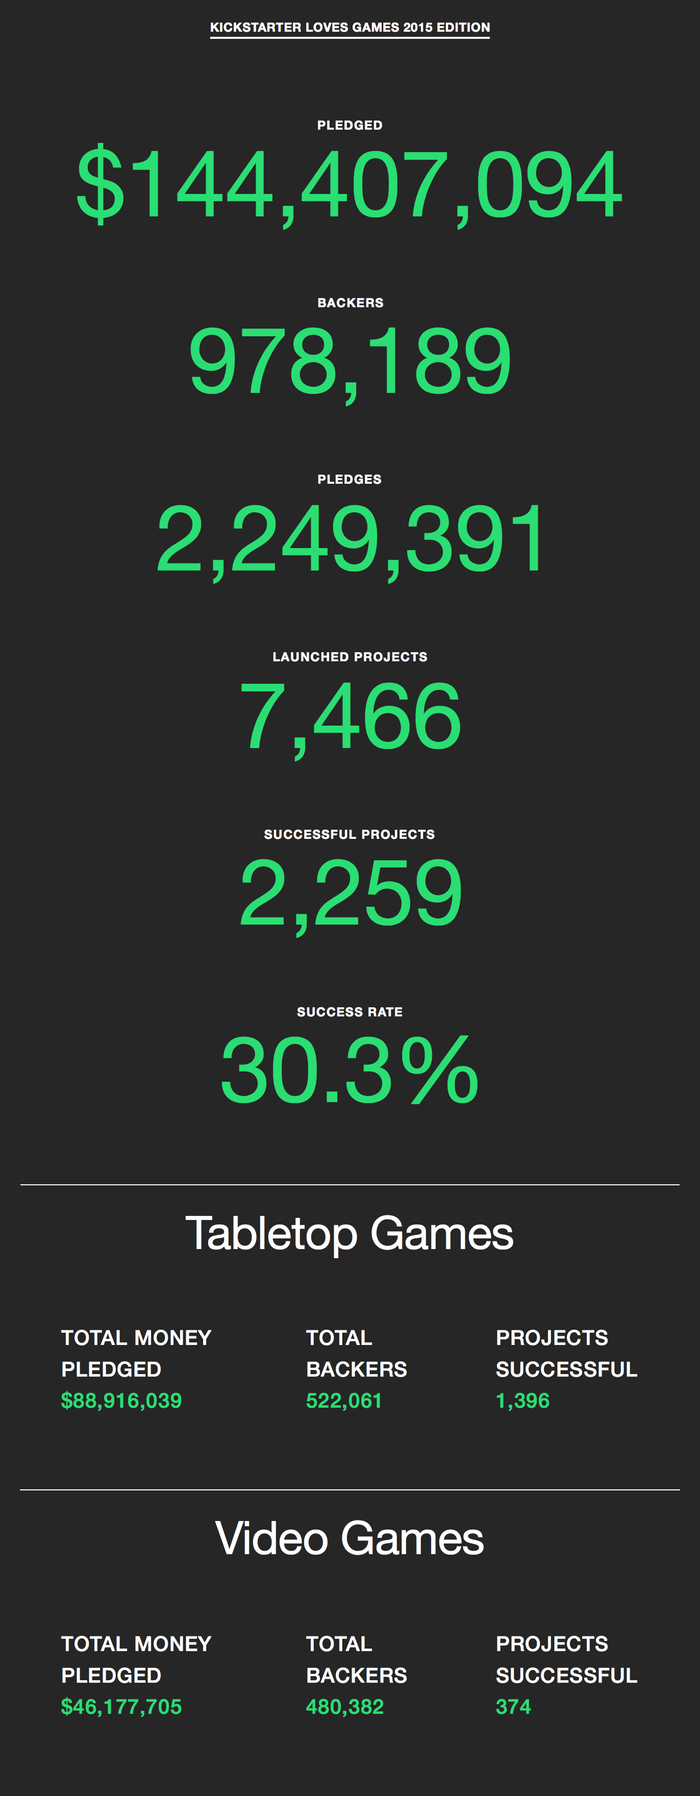 Videogames arrecadaram mais de 46 milhões de dólares no Kickstarter em 2015